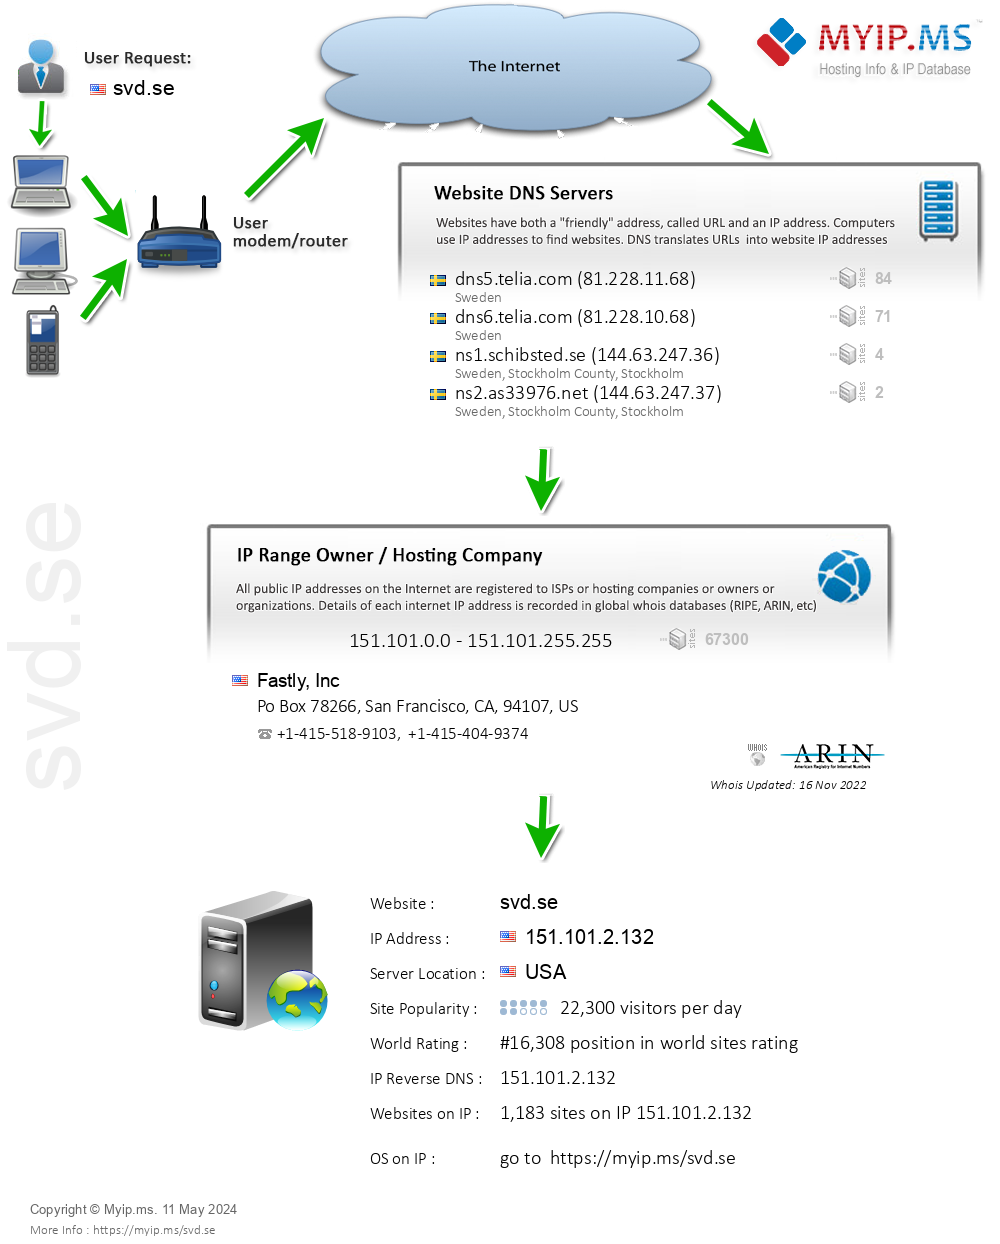 Svd.se - Website Hosting Visual IP Diagram